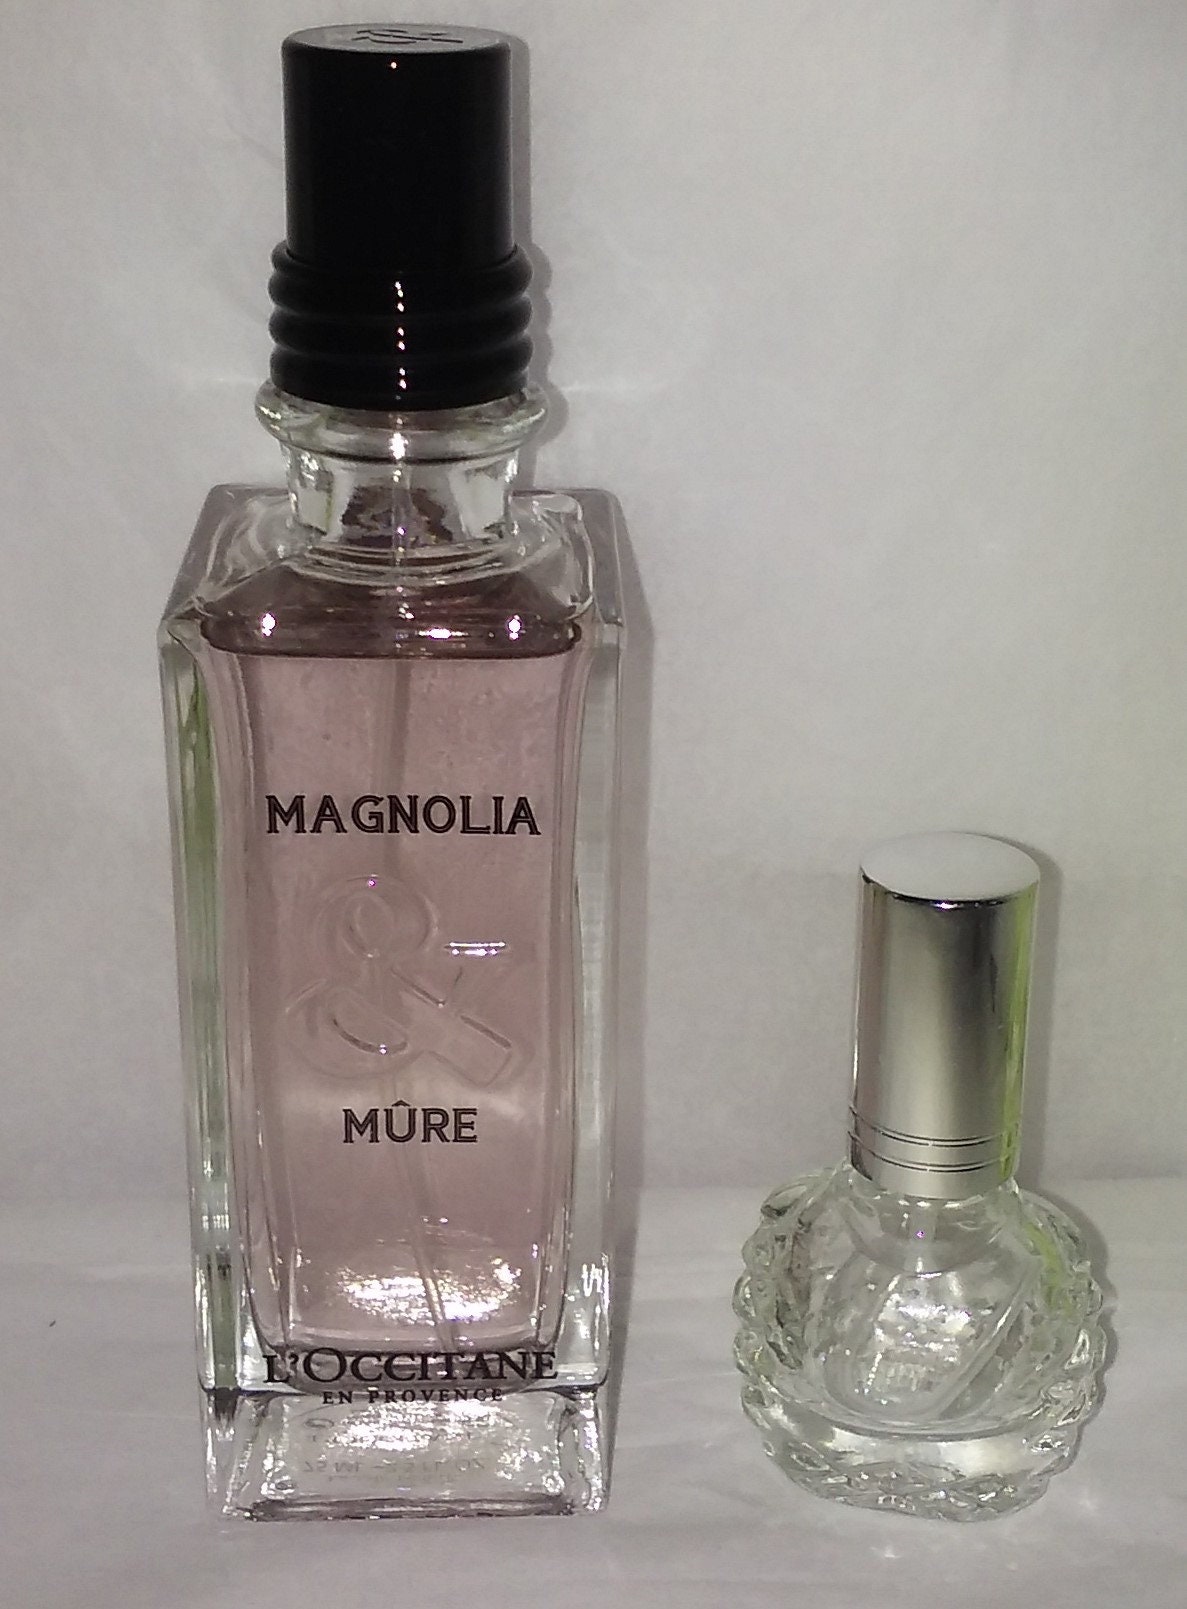 L'occitane Magnolia Mure Großes Parfum Steht Nicht Zum Verkauf von belfontantiques